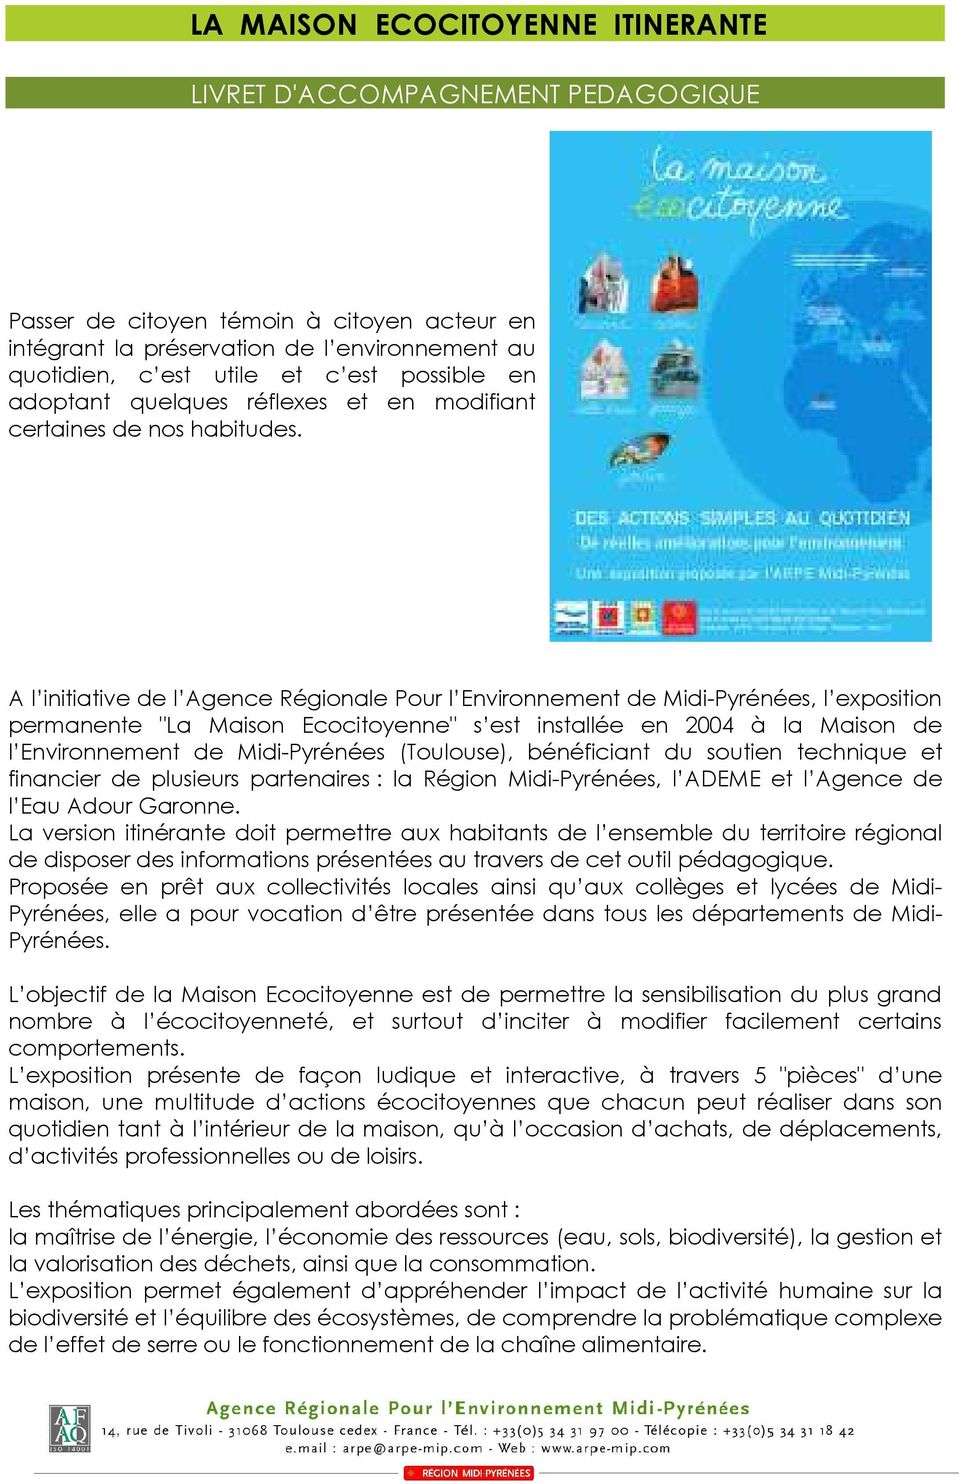 A l initiative de l Agence Régionale Pour l Environnement de Midi-Pyrénées, l exposition permanente "La Maison Ecocitoyenne" s est installée en 2004 à la Maison de l Environnement de Midi-Pyrénées